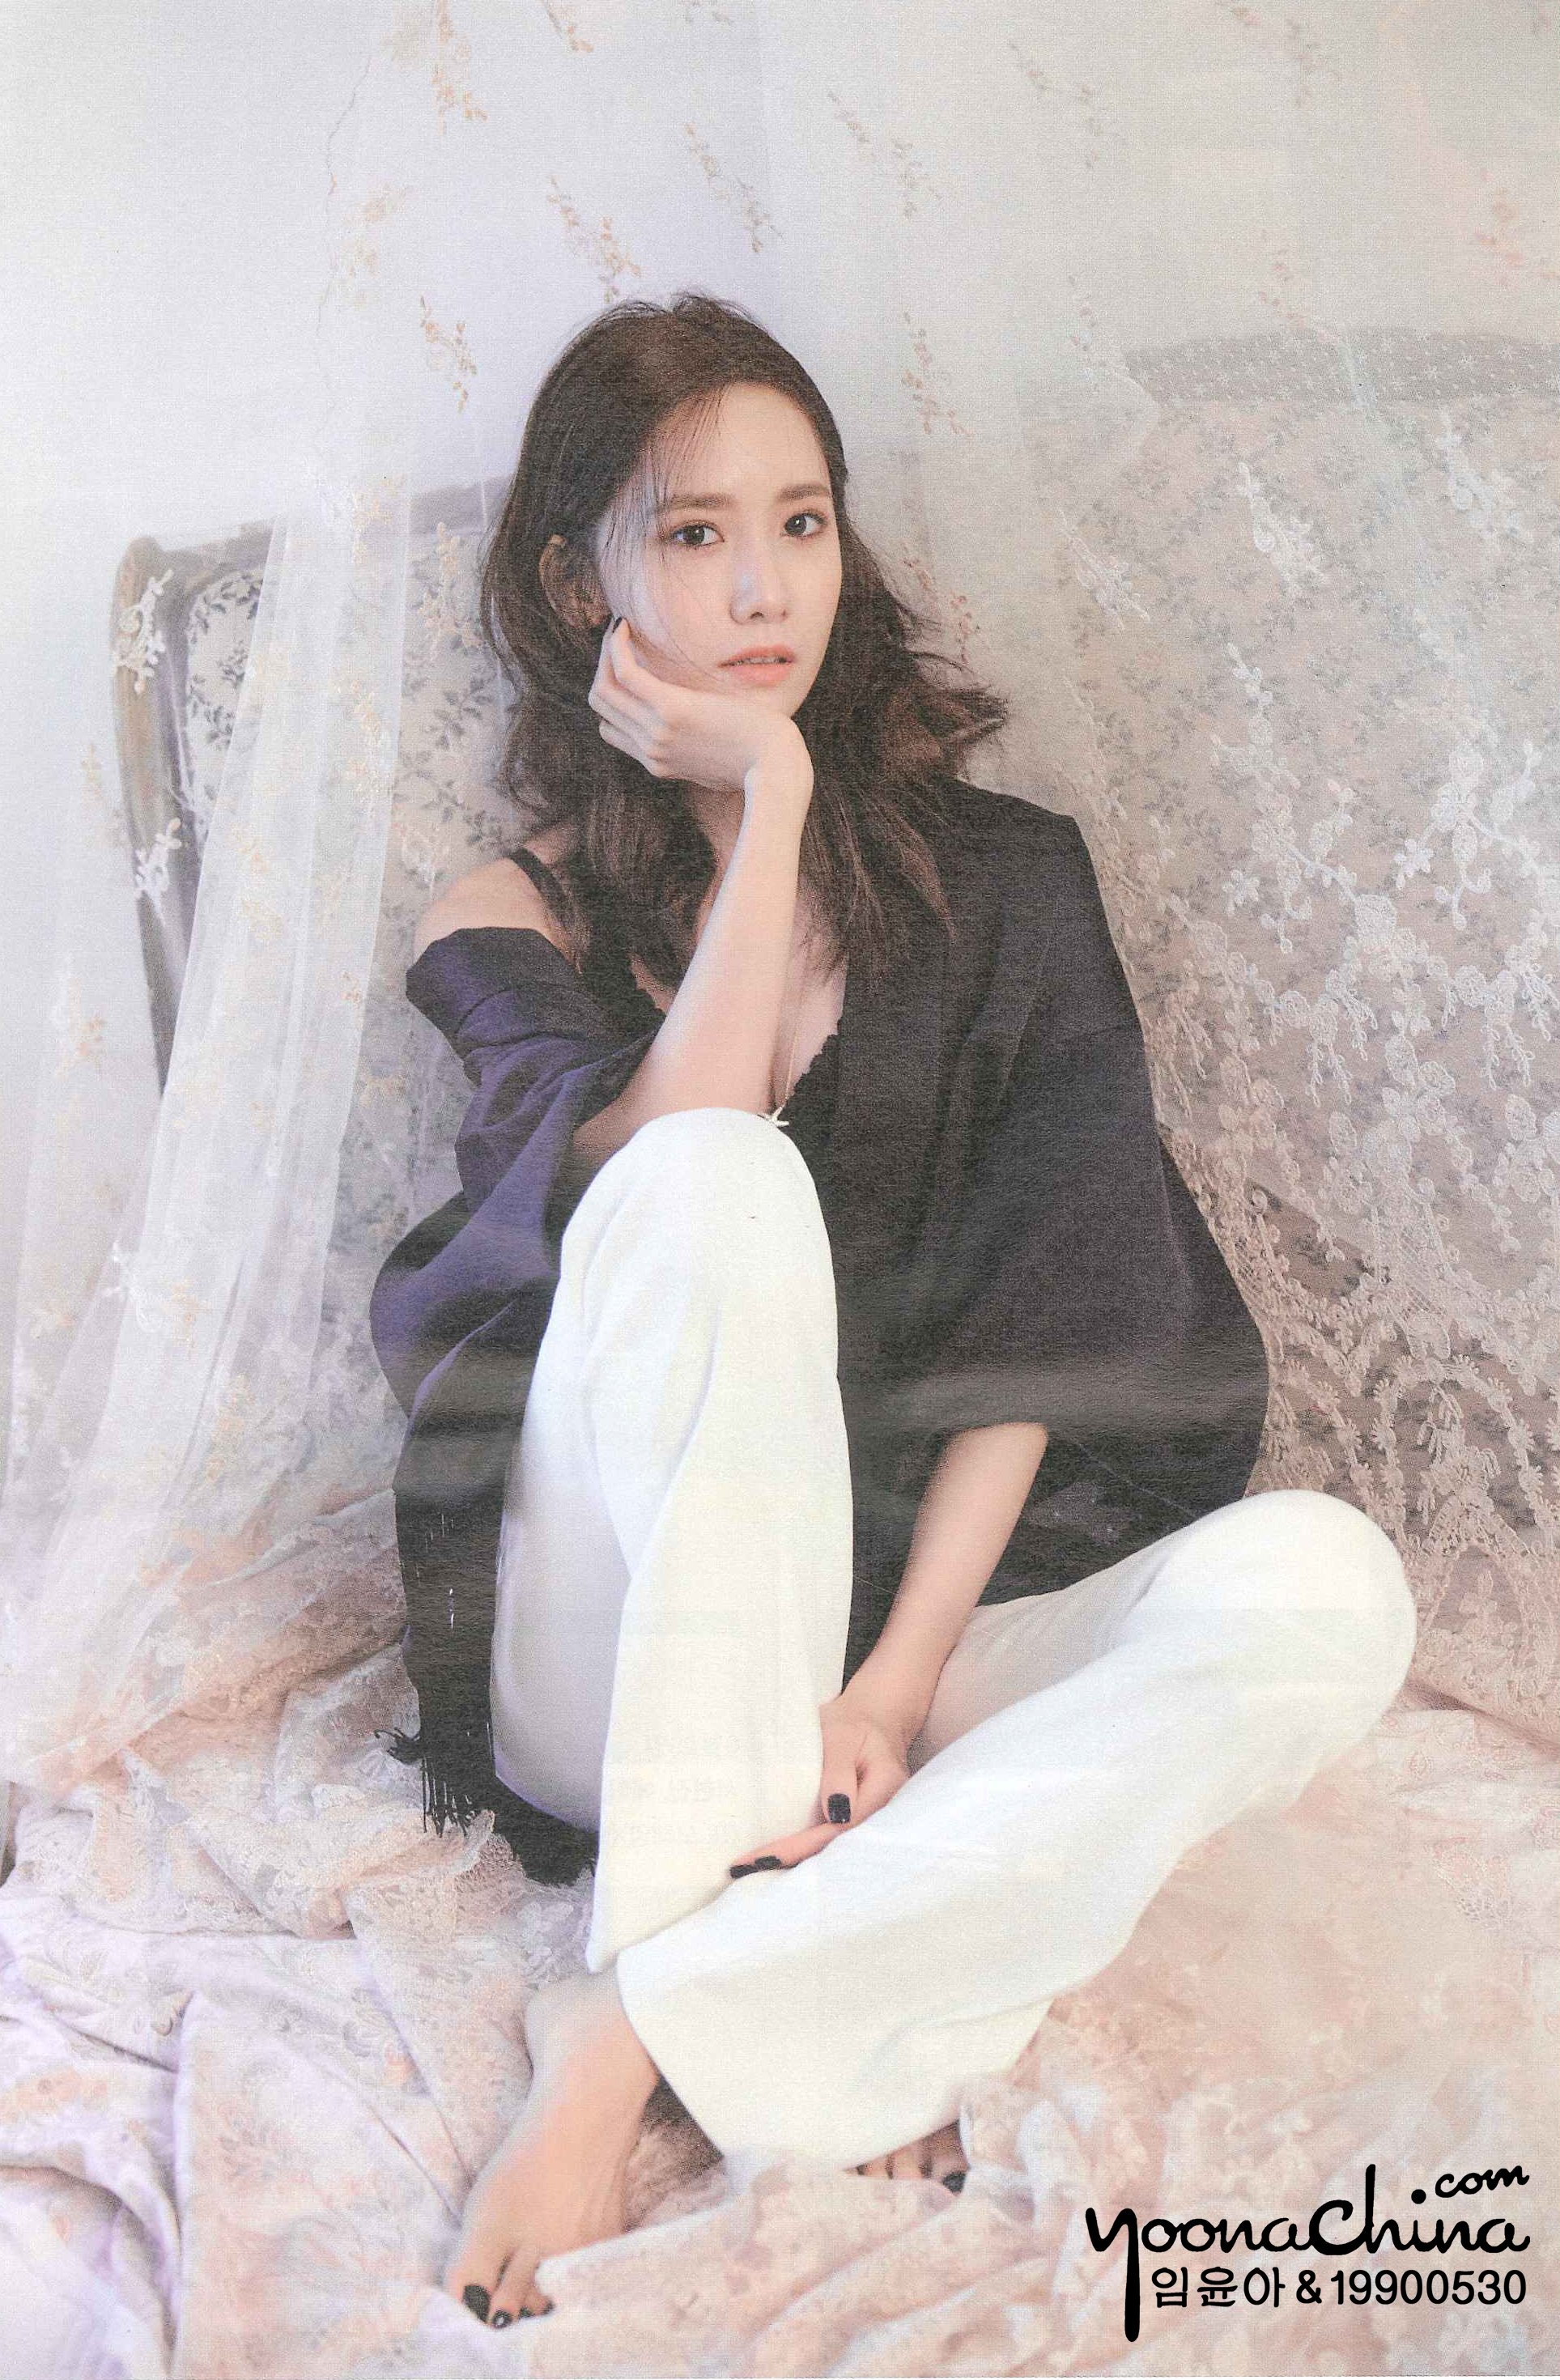 [PIC][06-07-2016]YoonA xuất hiện trên trang bìa tháng 7 của tạp chí "HIGH CUT" 2DMur7fMKQ-3000x3000